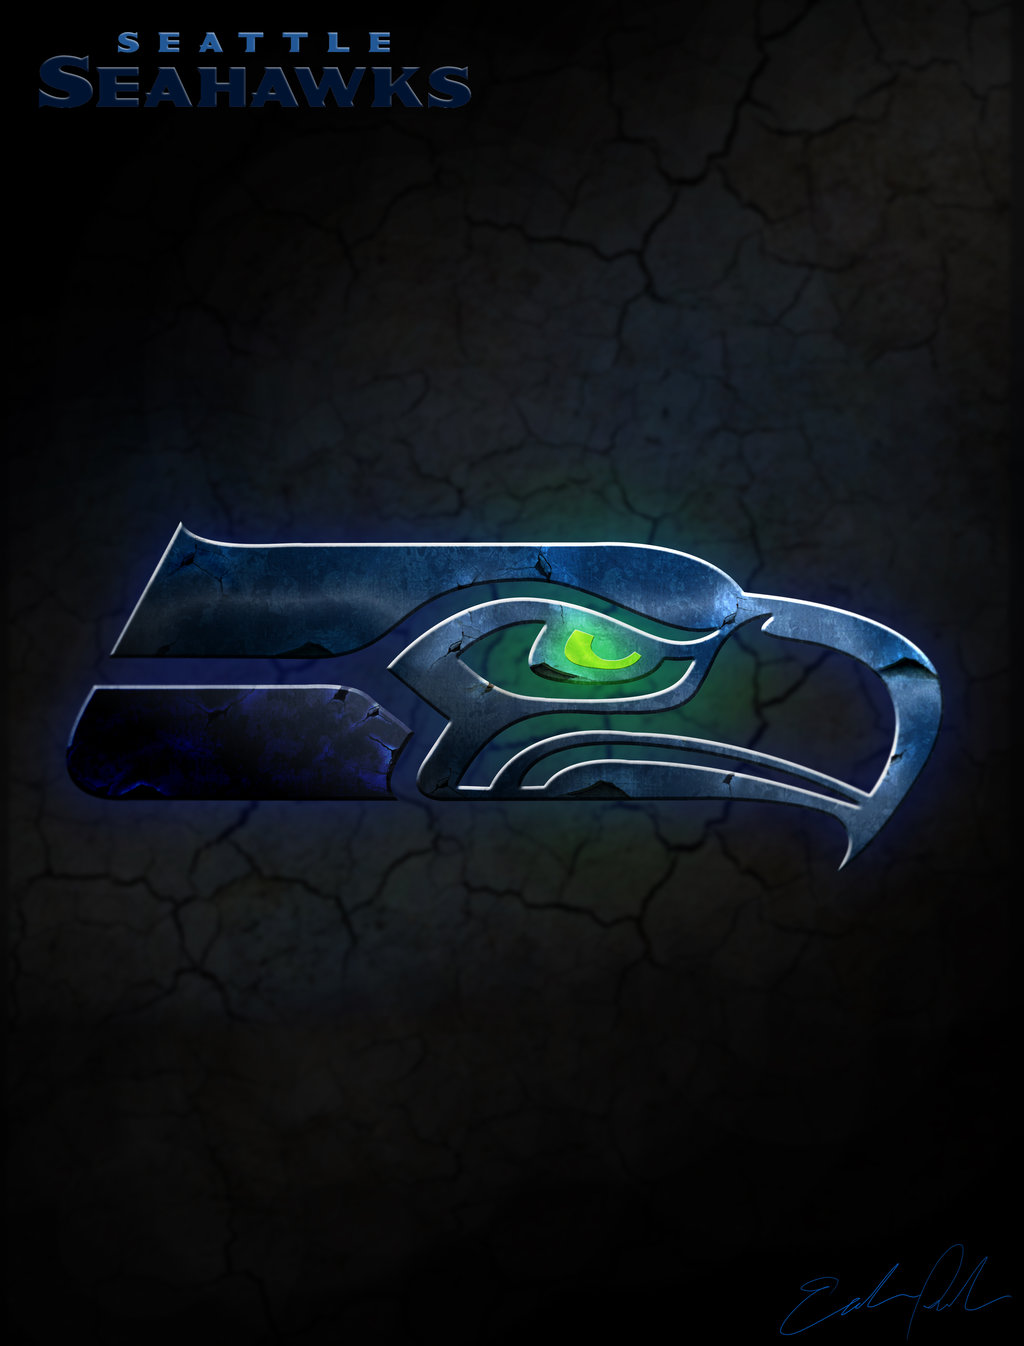 Seahawks Logo Wallpaper 2013 Seattle seahawksby erikfish